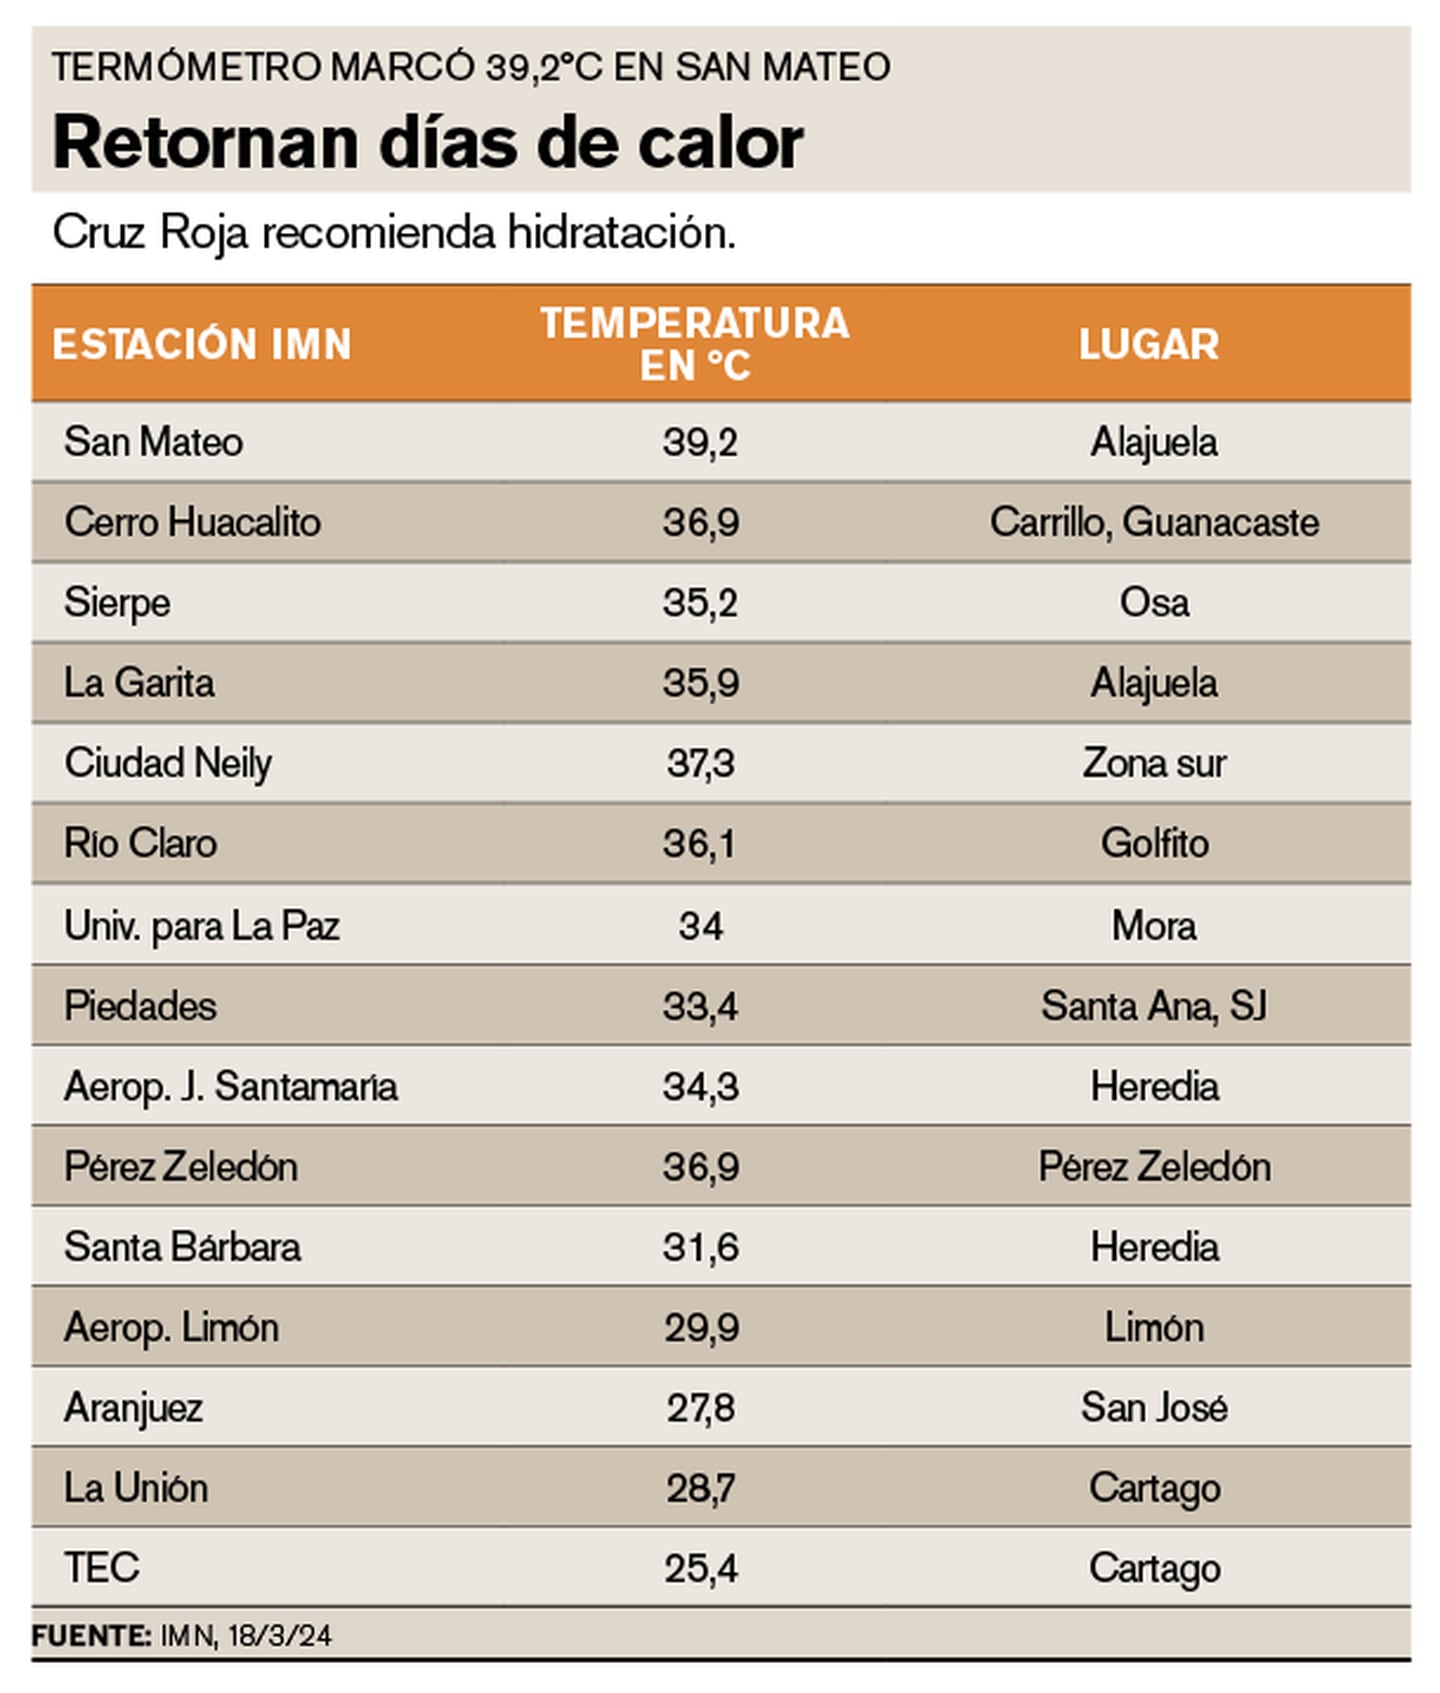 Se espera que máximas temperaturas alcancen los 40°C en el Pacífico y superen los 35°C en Alajuela.